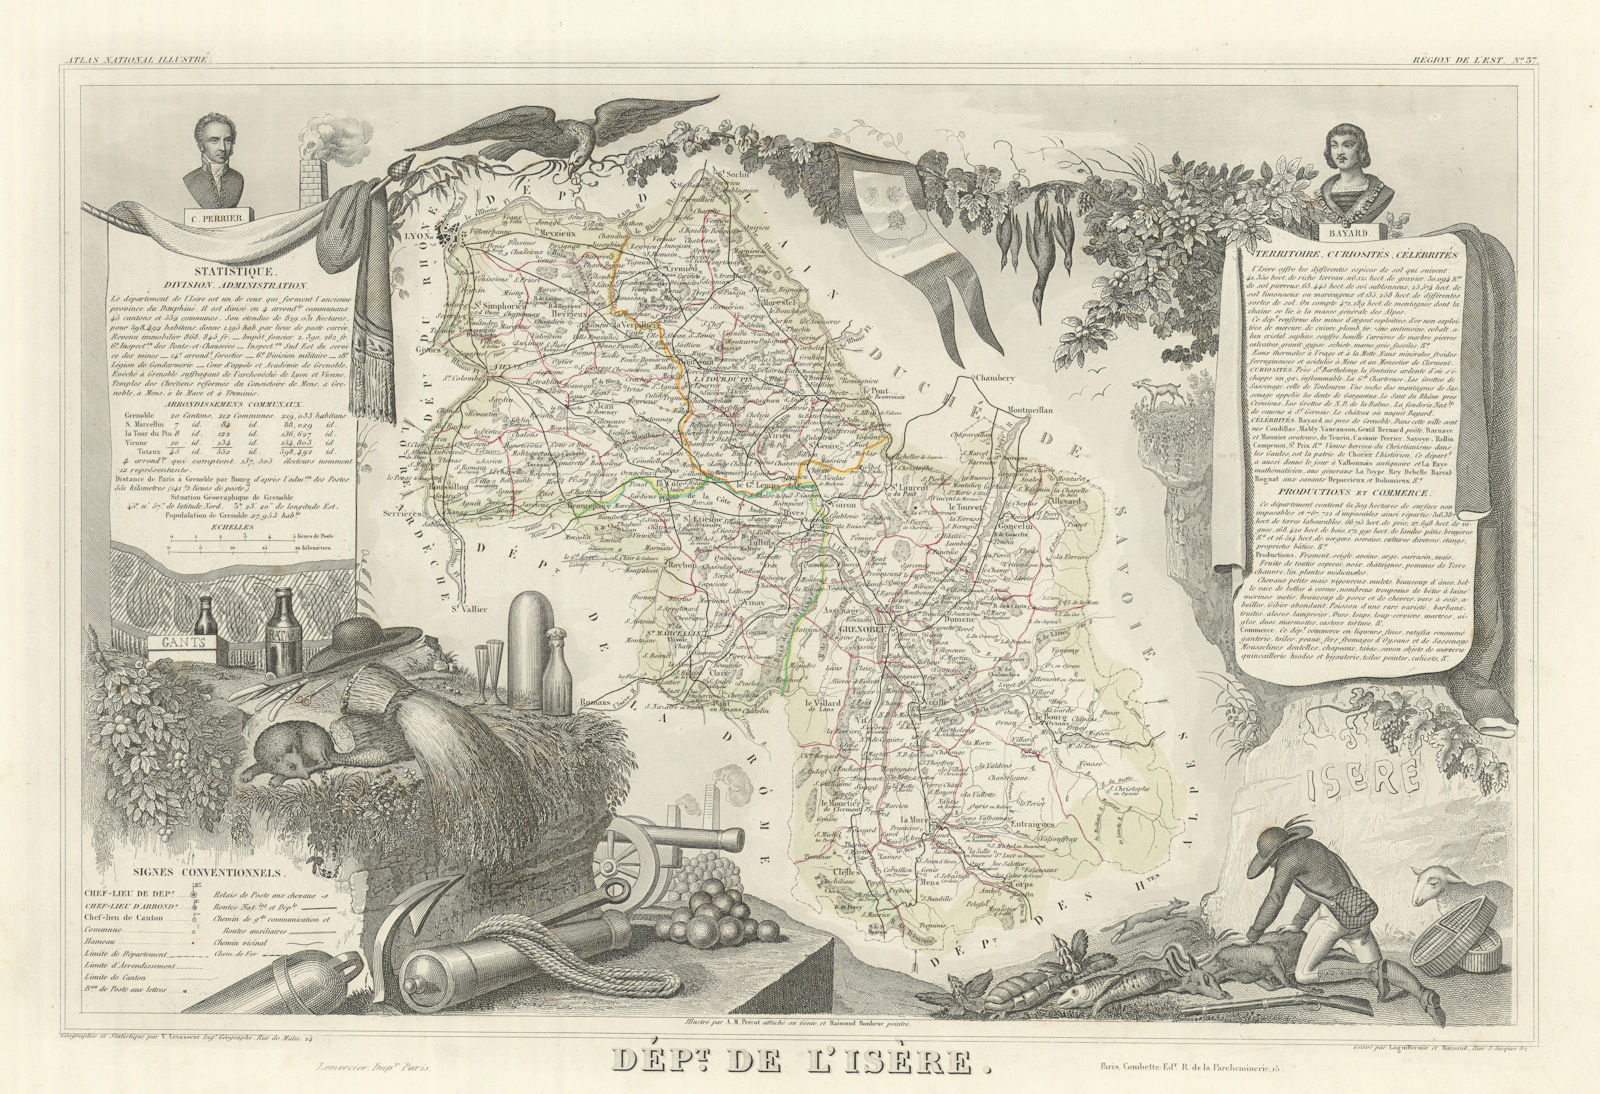 Département de l'ISÈRE. Decorative antique map/carte by Victor LEVASSEUR 1856